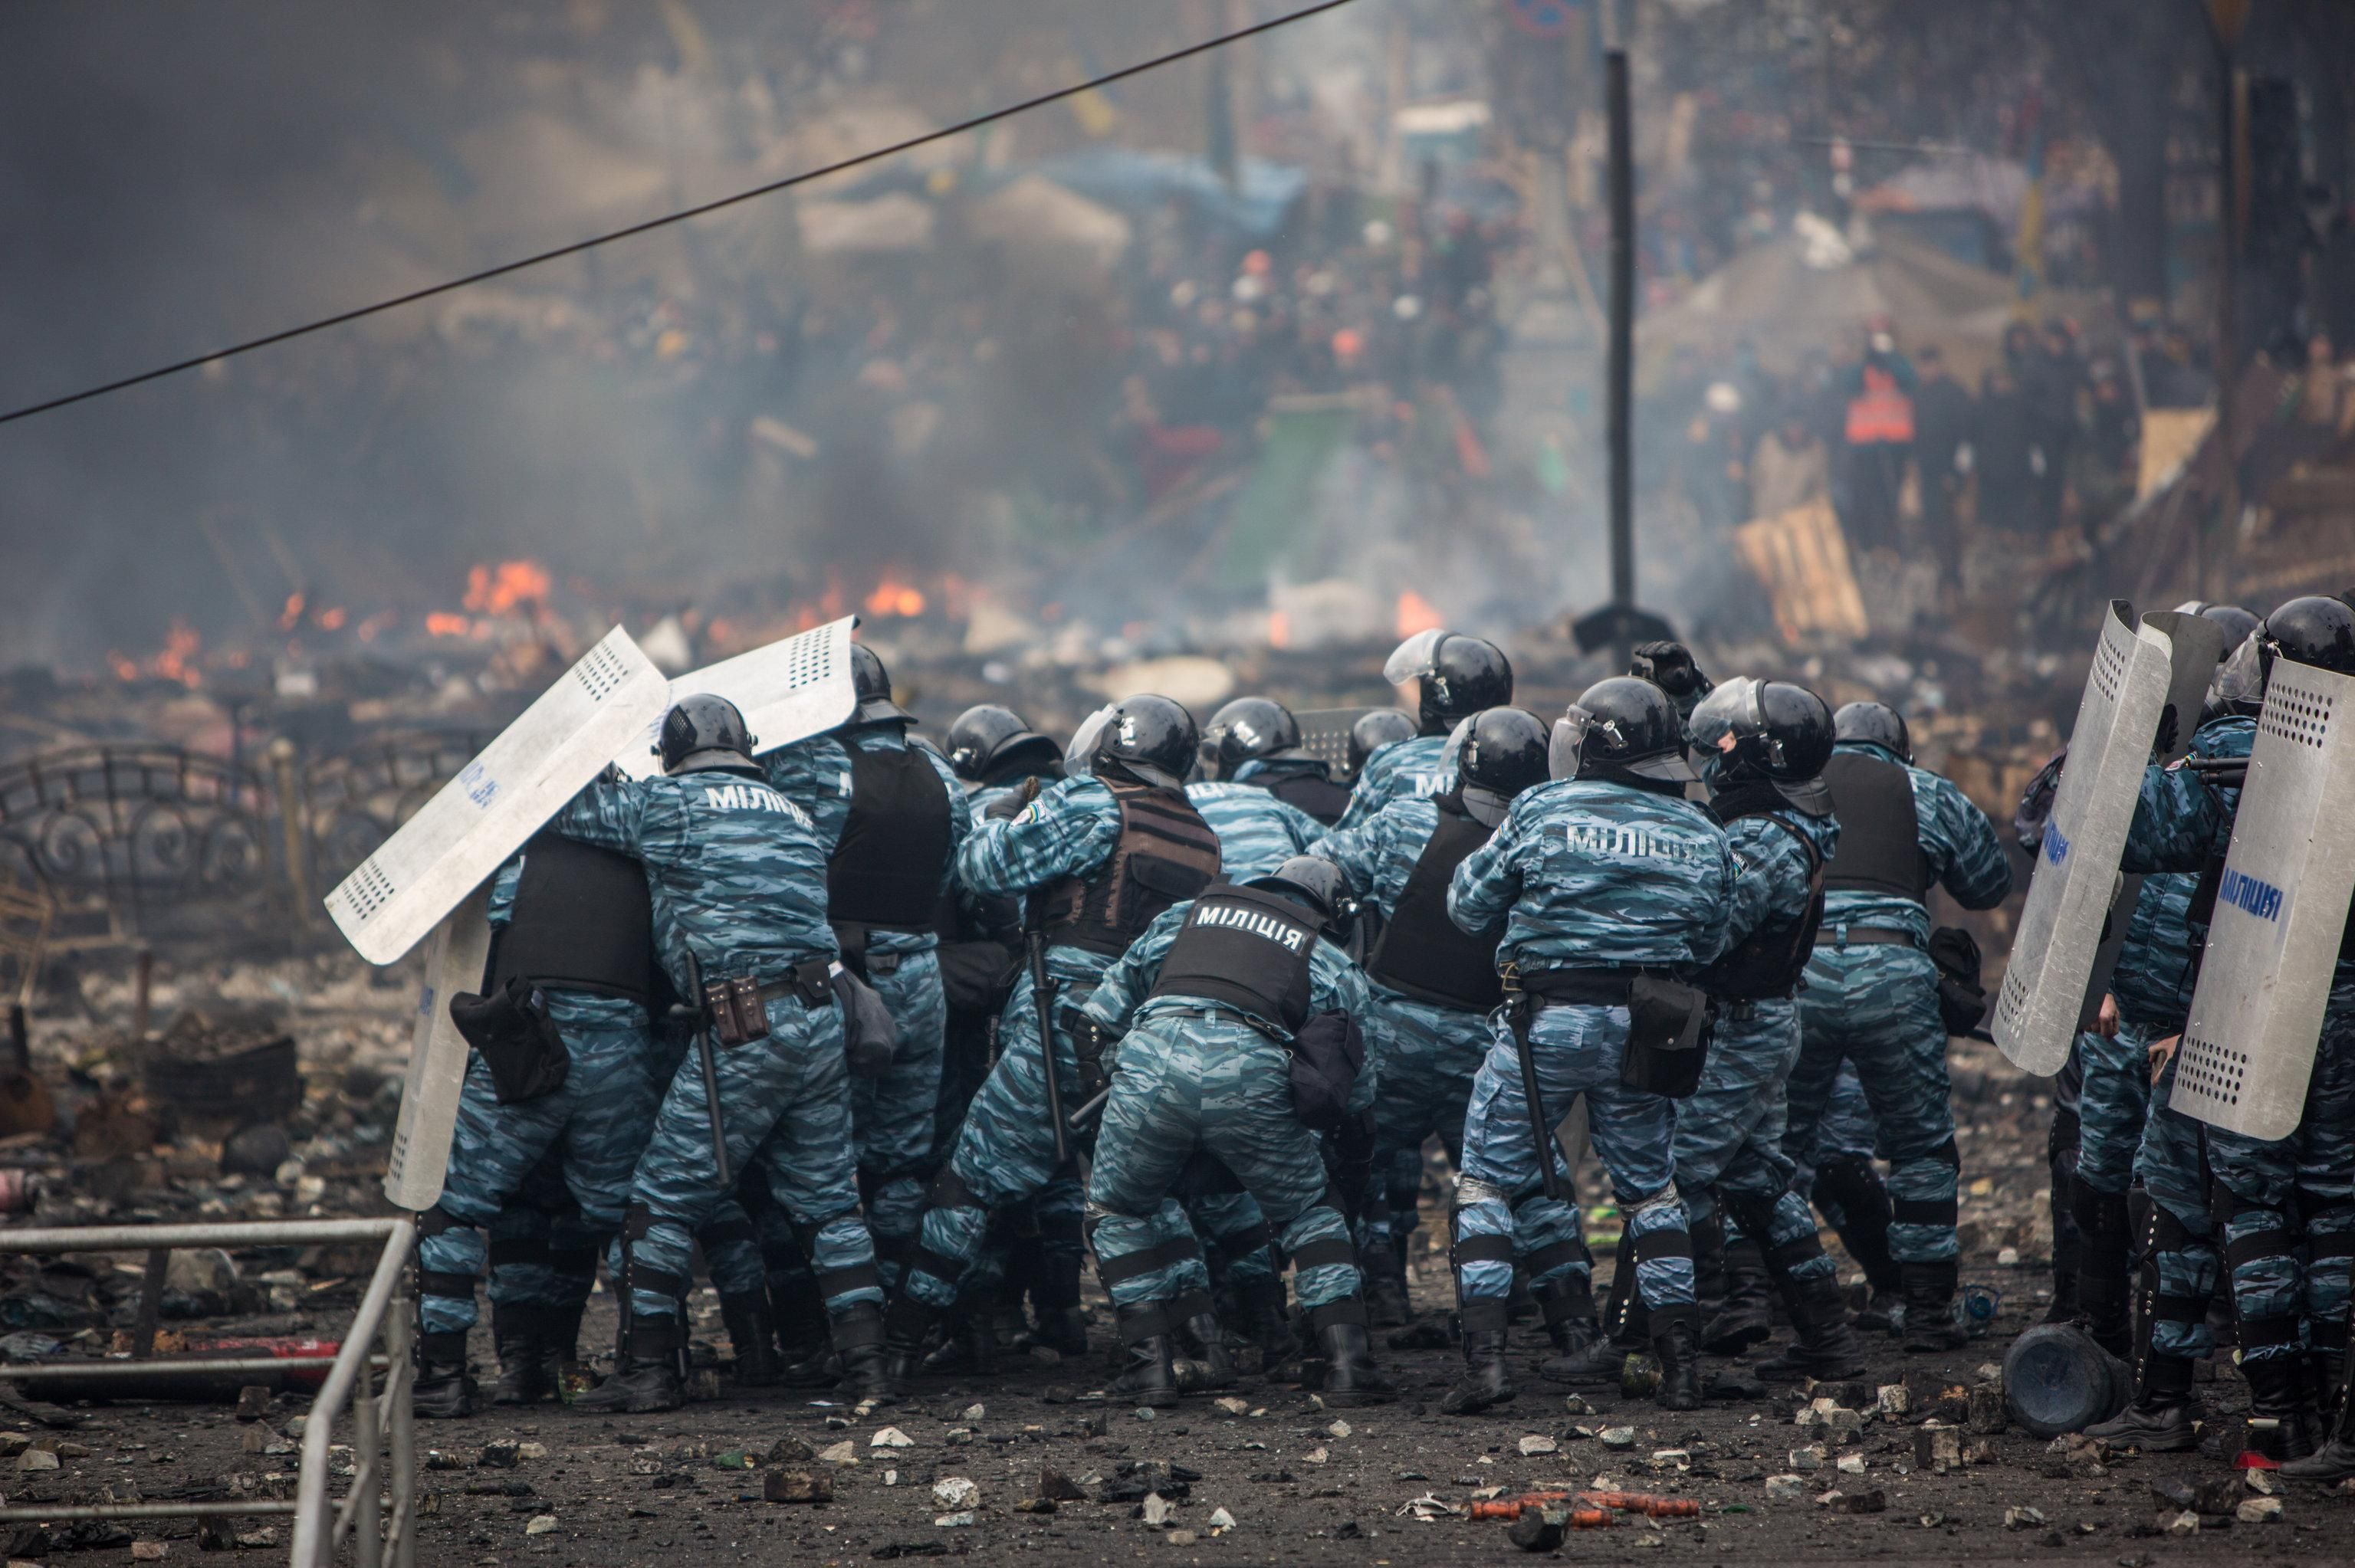 Руководитель спецподразделения новой полиции помогал разгонять Майдан, – СМИ